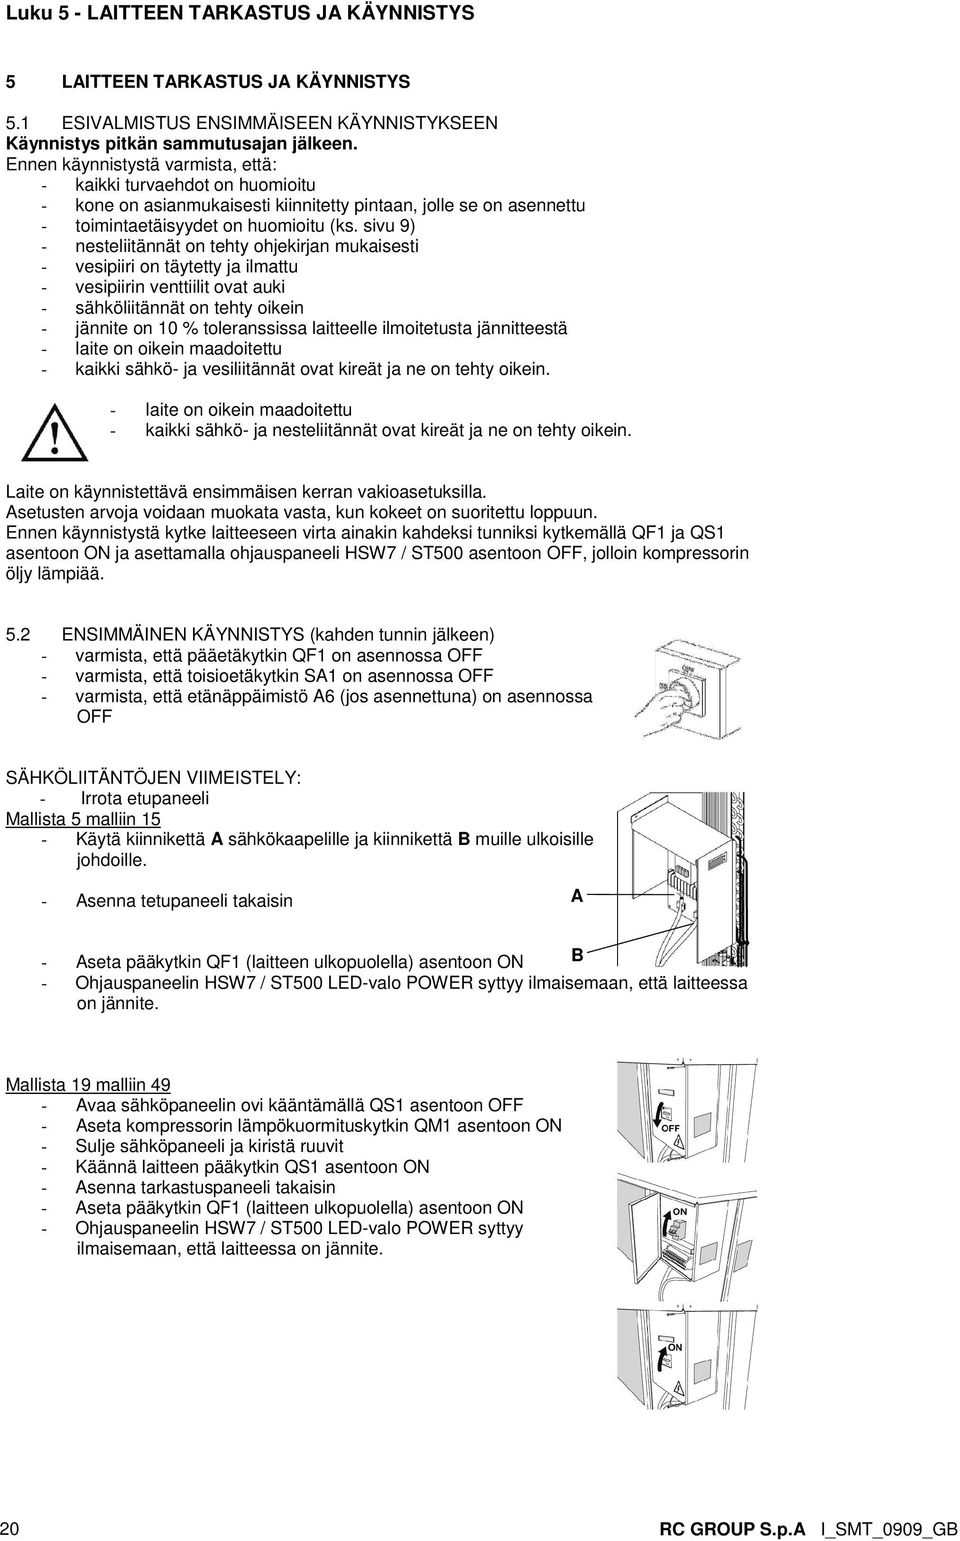 sivu 9) - nesteliitännät on tehty ohjekirjan mukaisesti - vesipiiri on täytetty ja ilmattu - vesipiirin venttiilit ovat auki - sähköliitännät on tehty oikein - jännite on 10 % toleranssissa